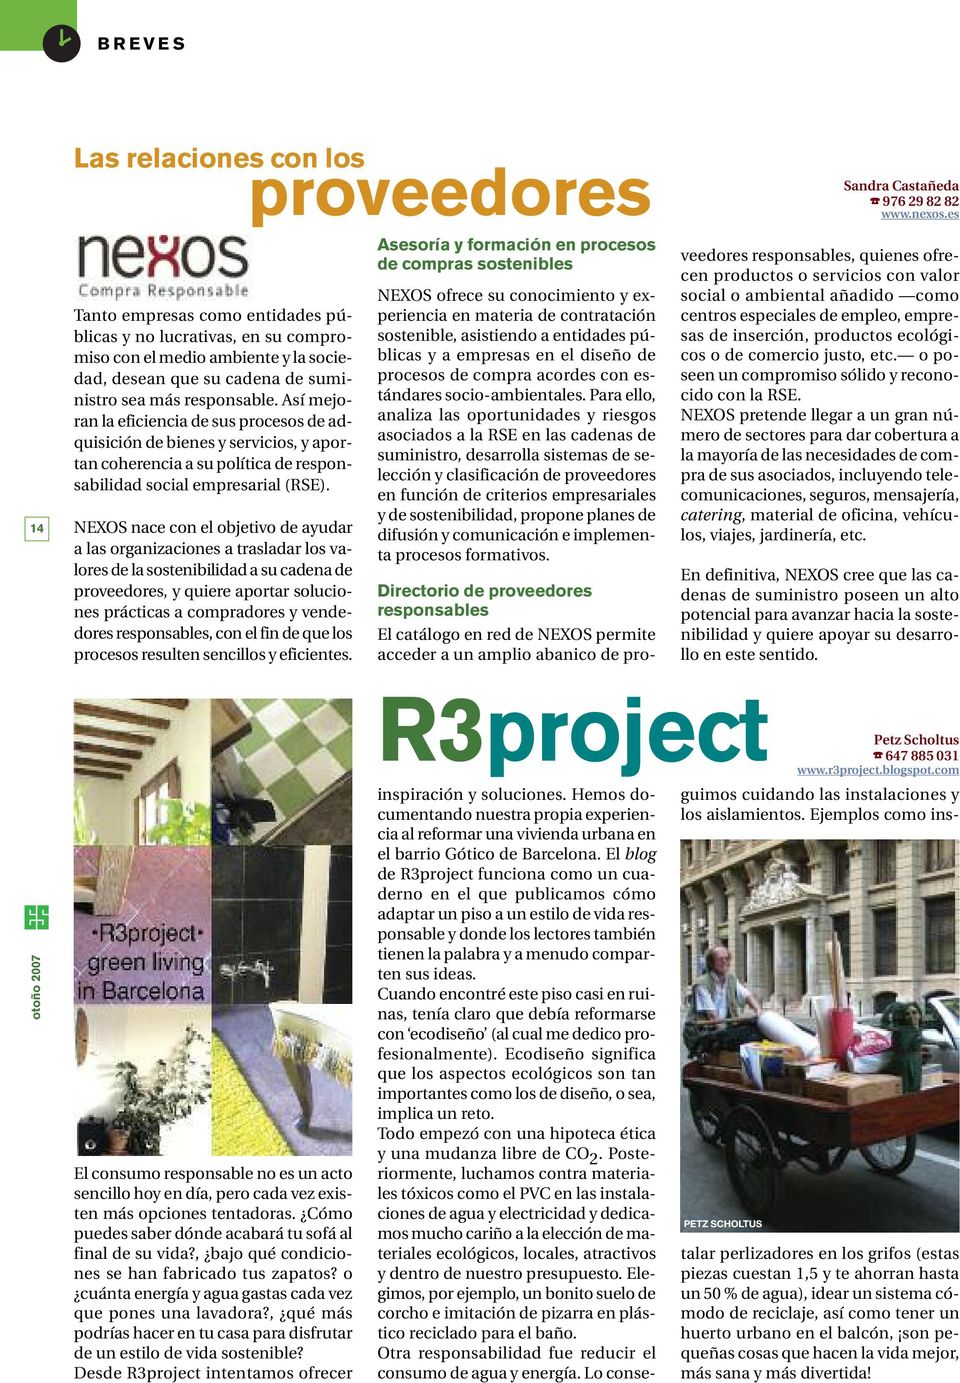 NEXOS nace con el objetivo de ayudar a las organizaciones a trasladar los valores de la sostenibilidad a su cadena de proveedores, y quiere aportar soluciones prácticas a compradores y vendedores